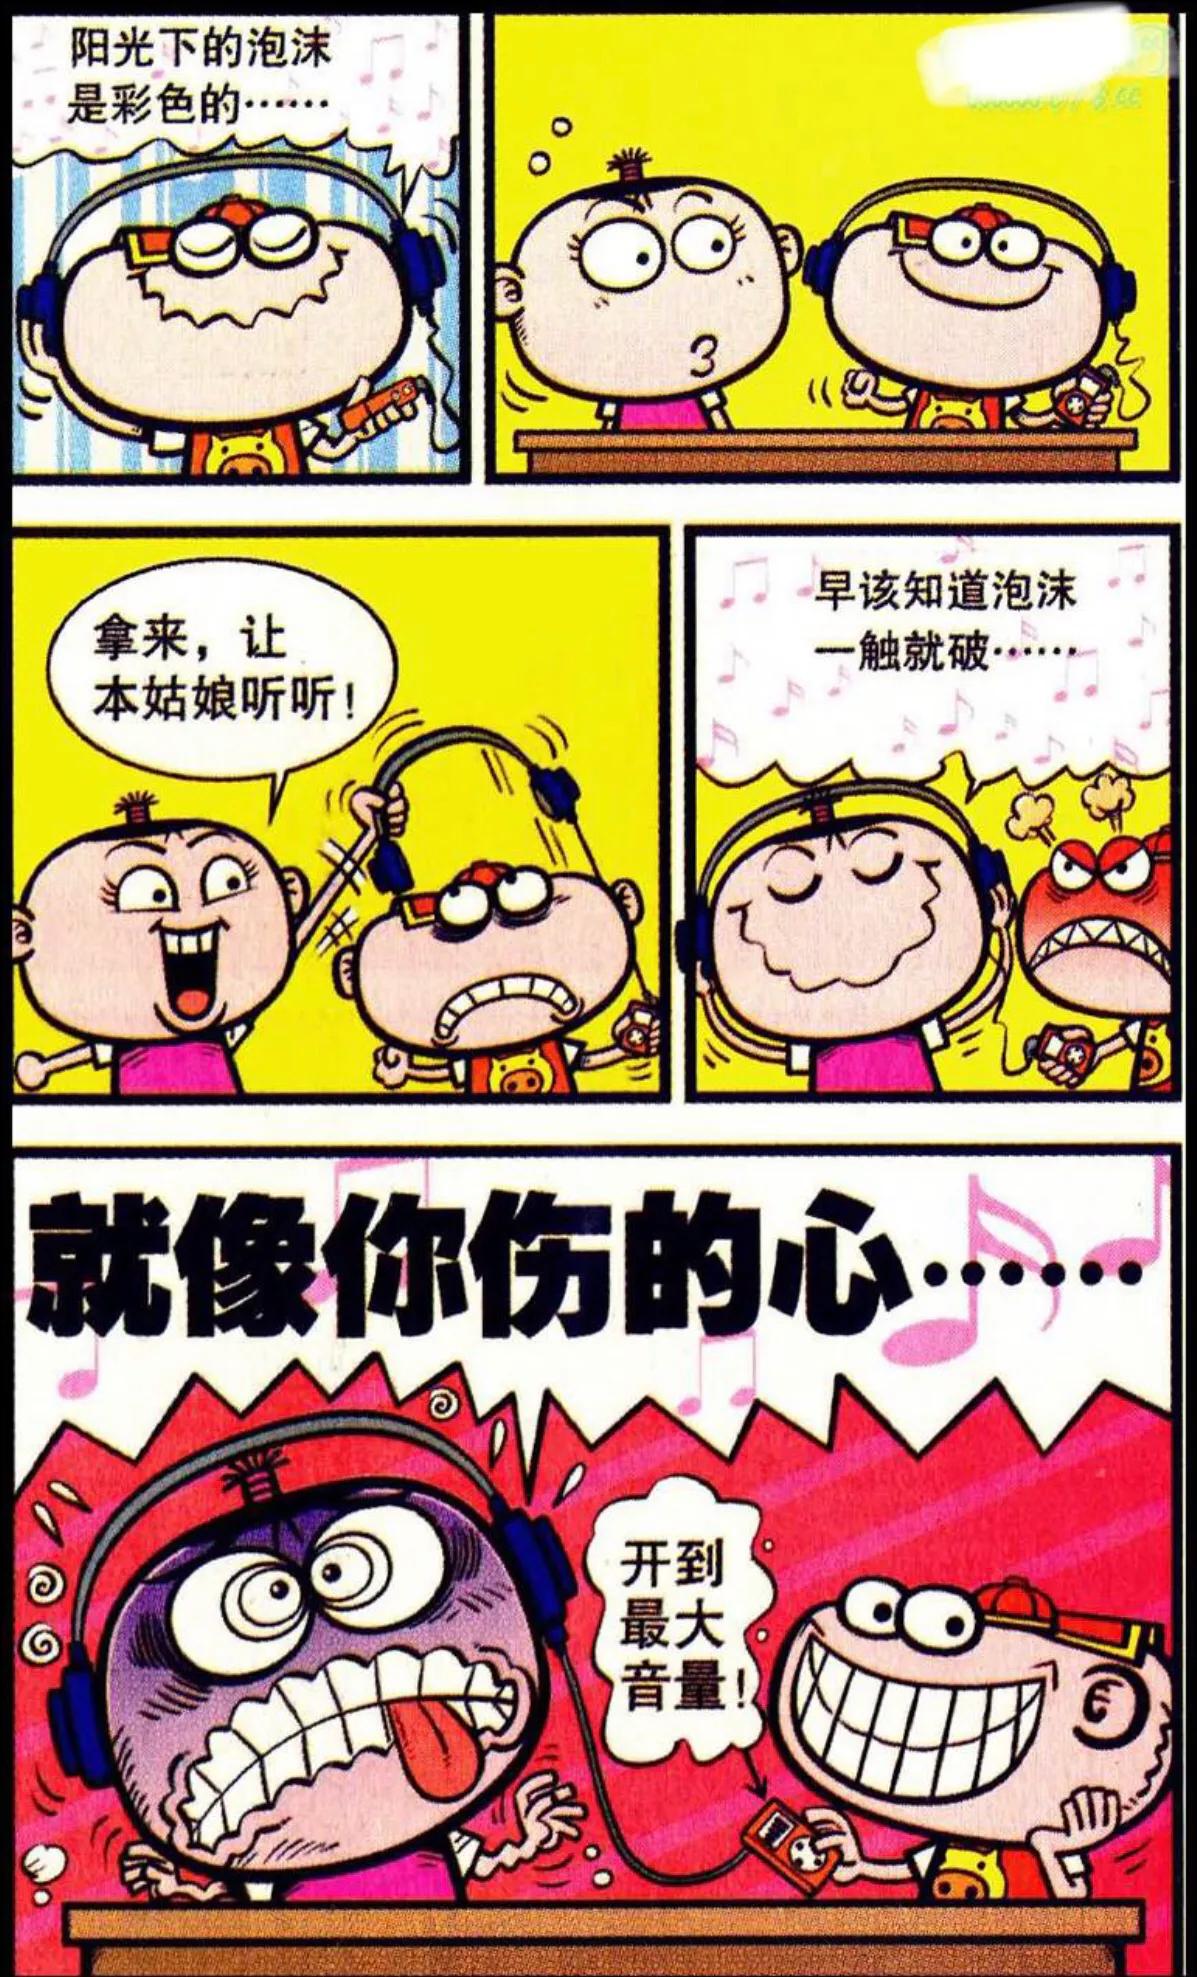 吐槽经典漫画《豌豆笑传》:莫名其妙,这几个故事的笑点在哪?